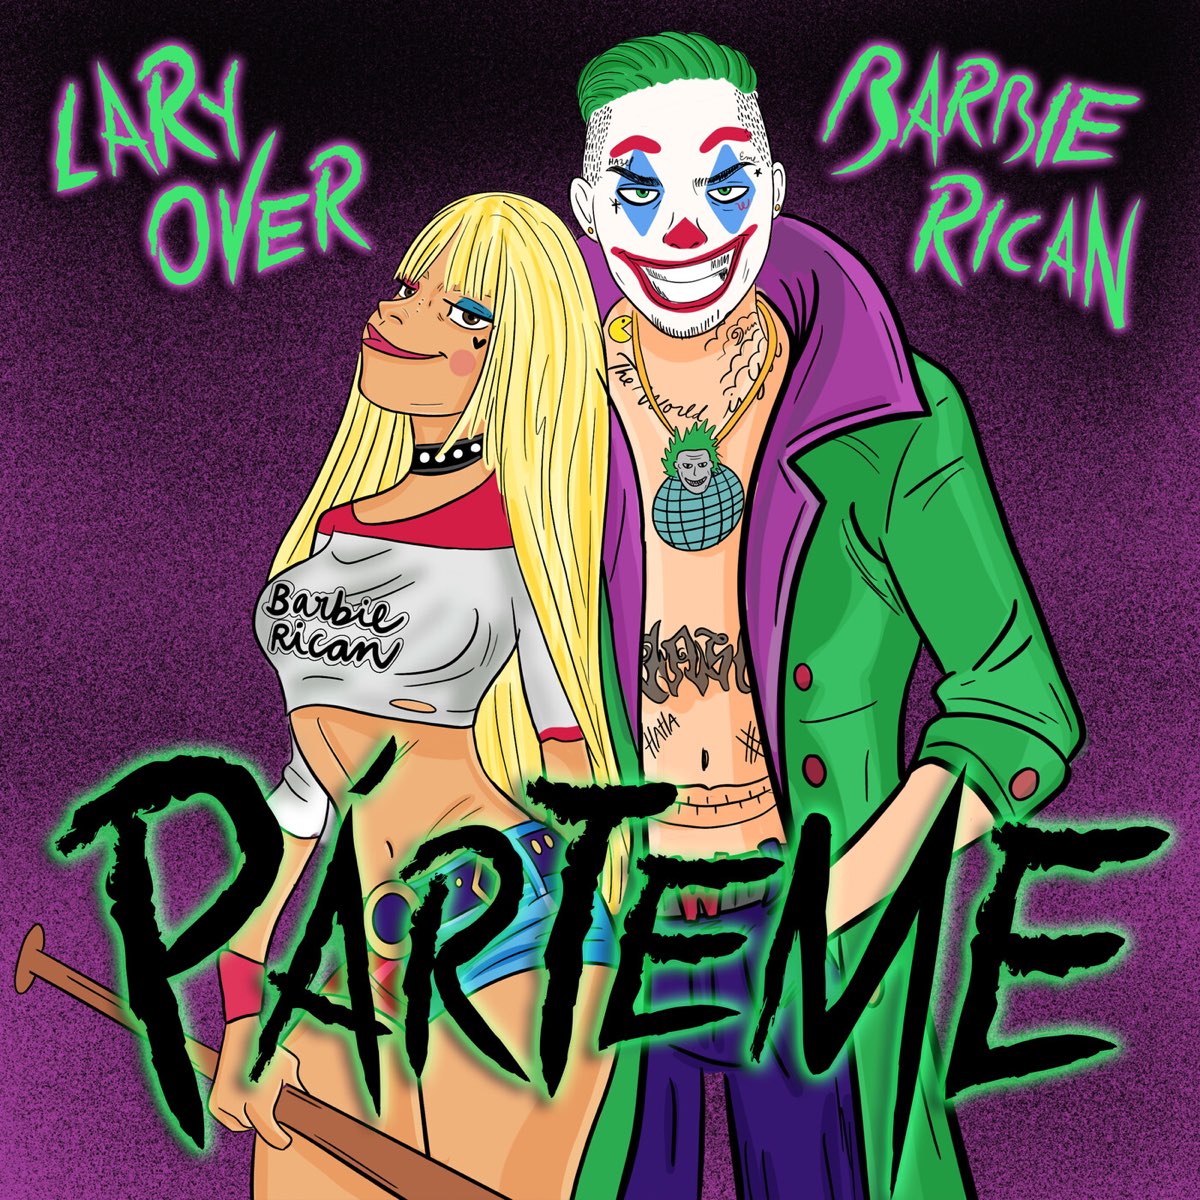 Párteme - Single de Lary Over & Barbie Rican en Apple Music